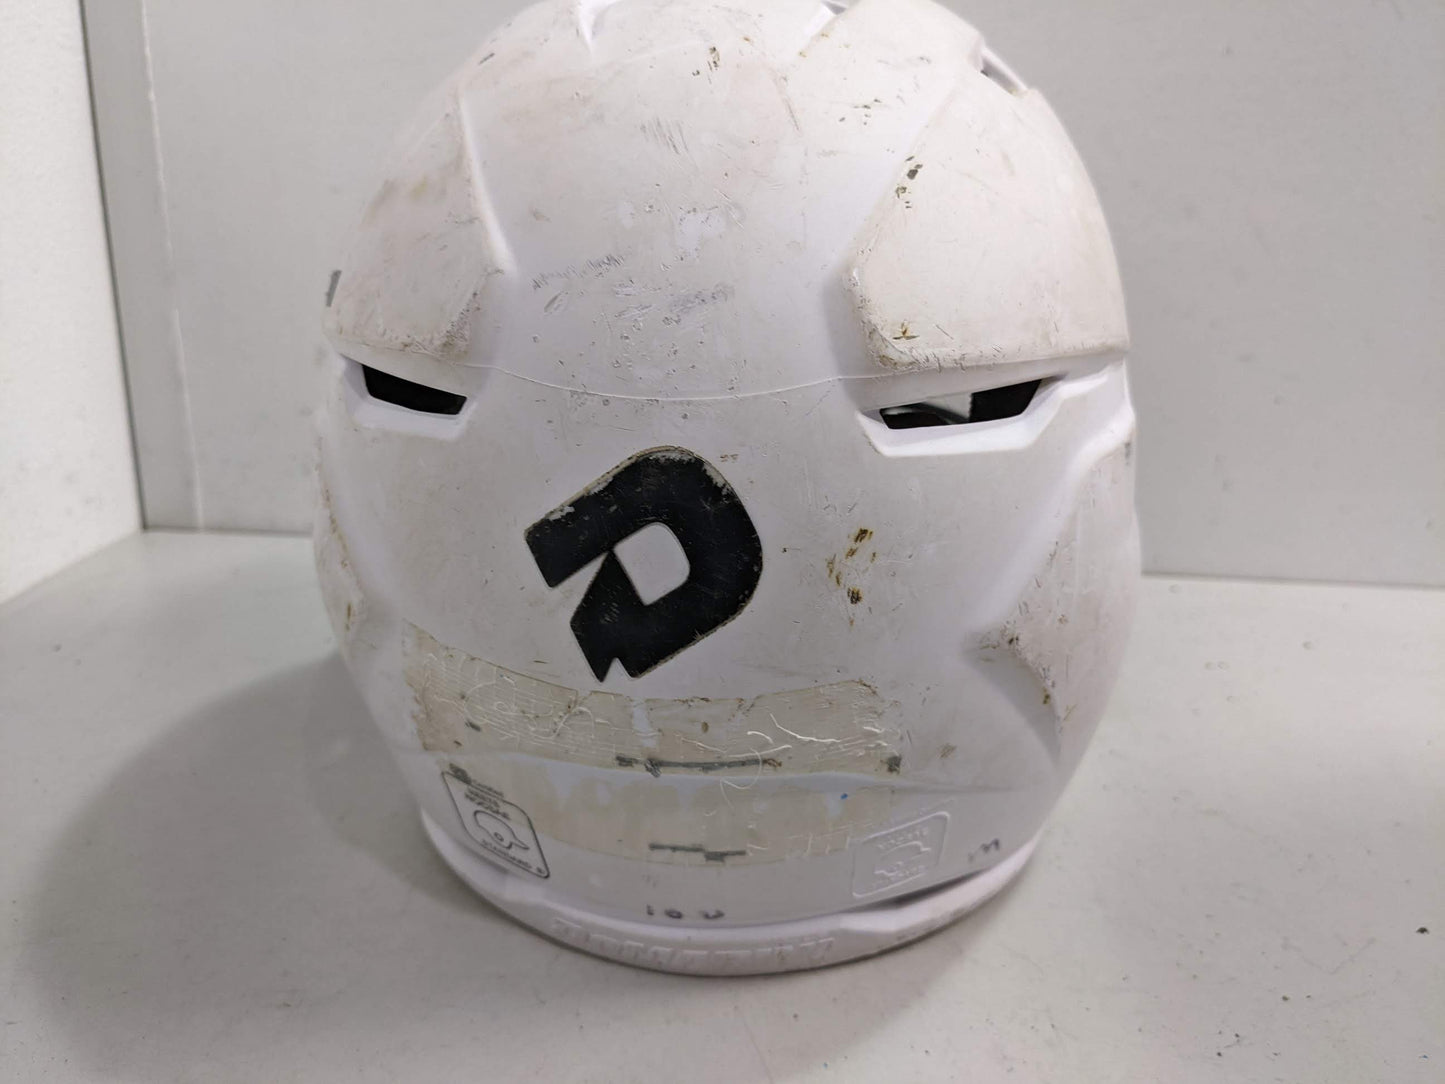 DeMarini West Jeff Baseball Batting Helmet Size Youth White Used Category Locally